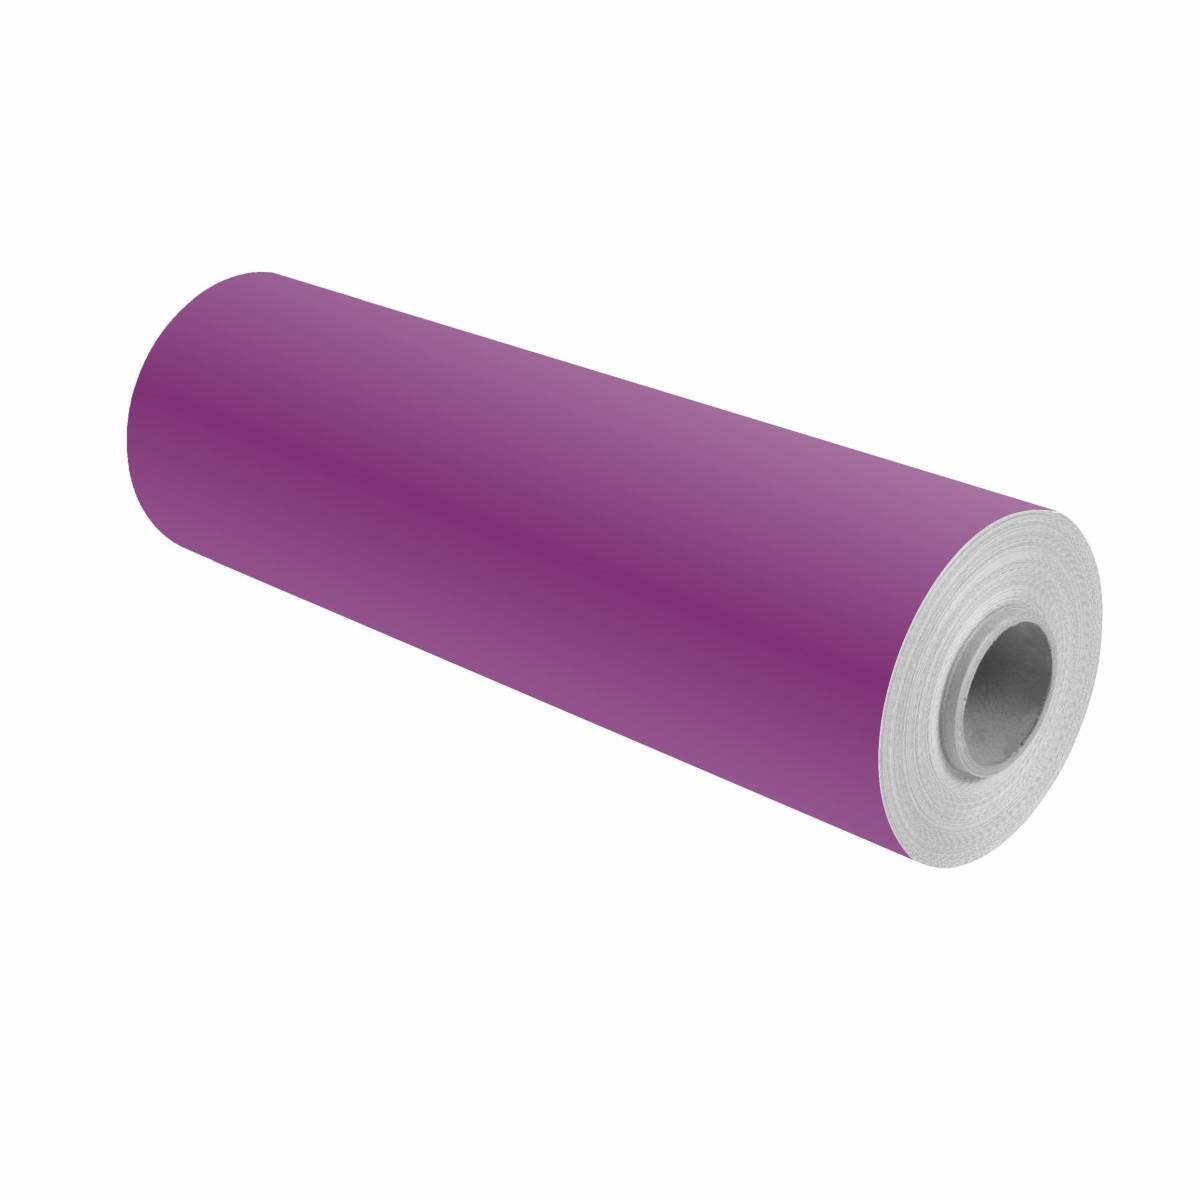 3M Film couleur 100-721 violet clair 1,22m x 25m